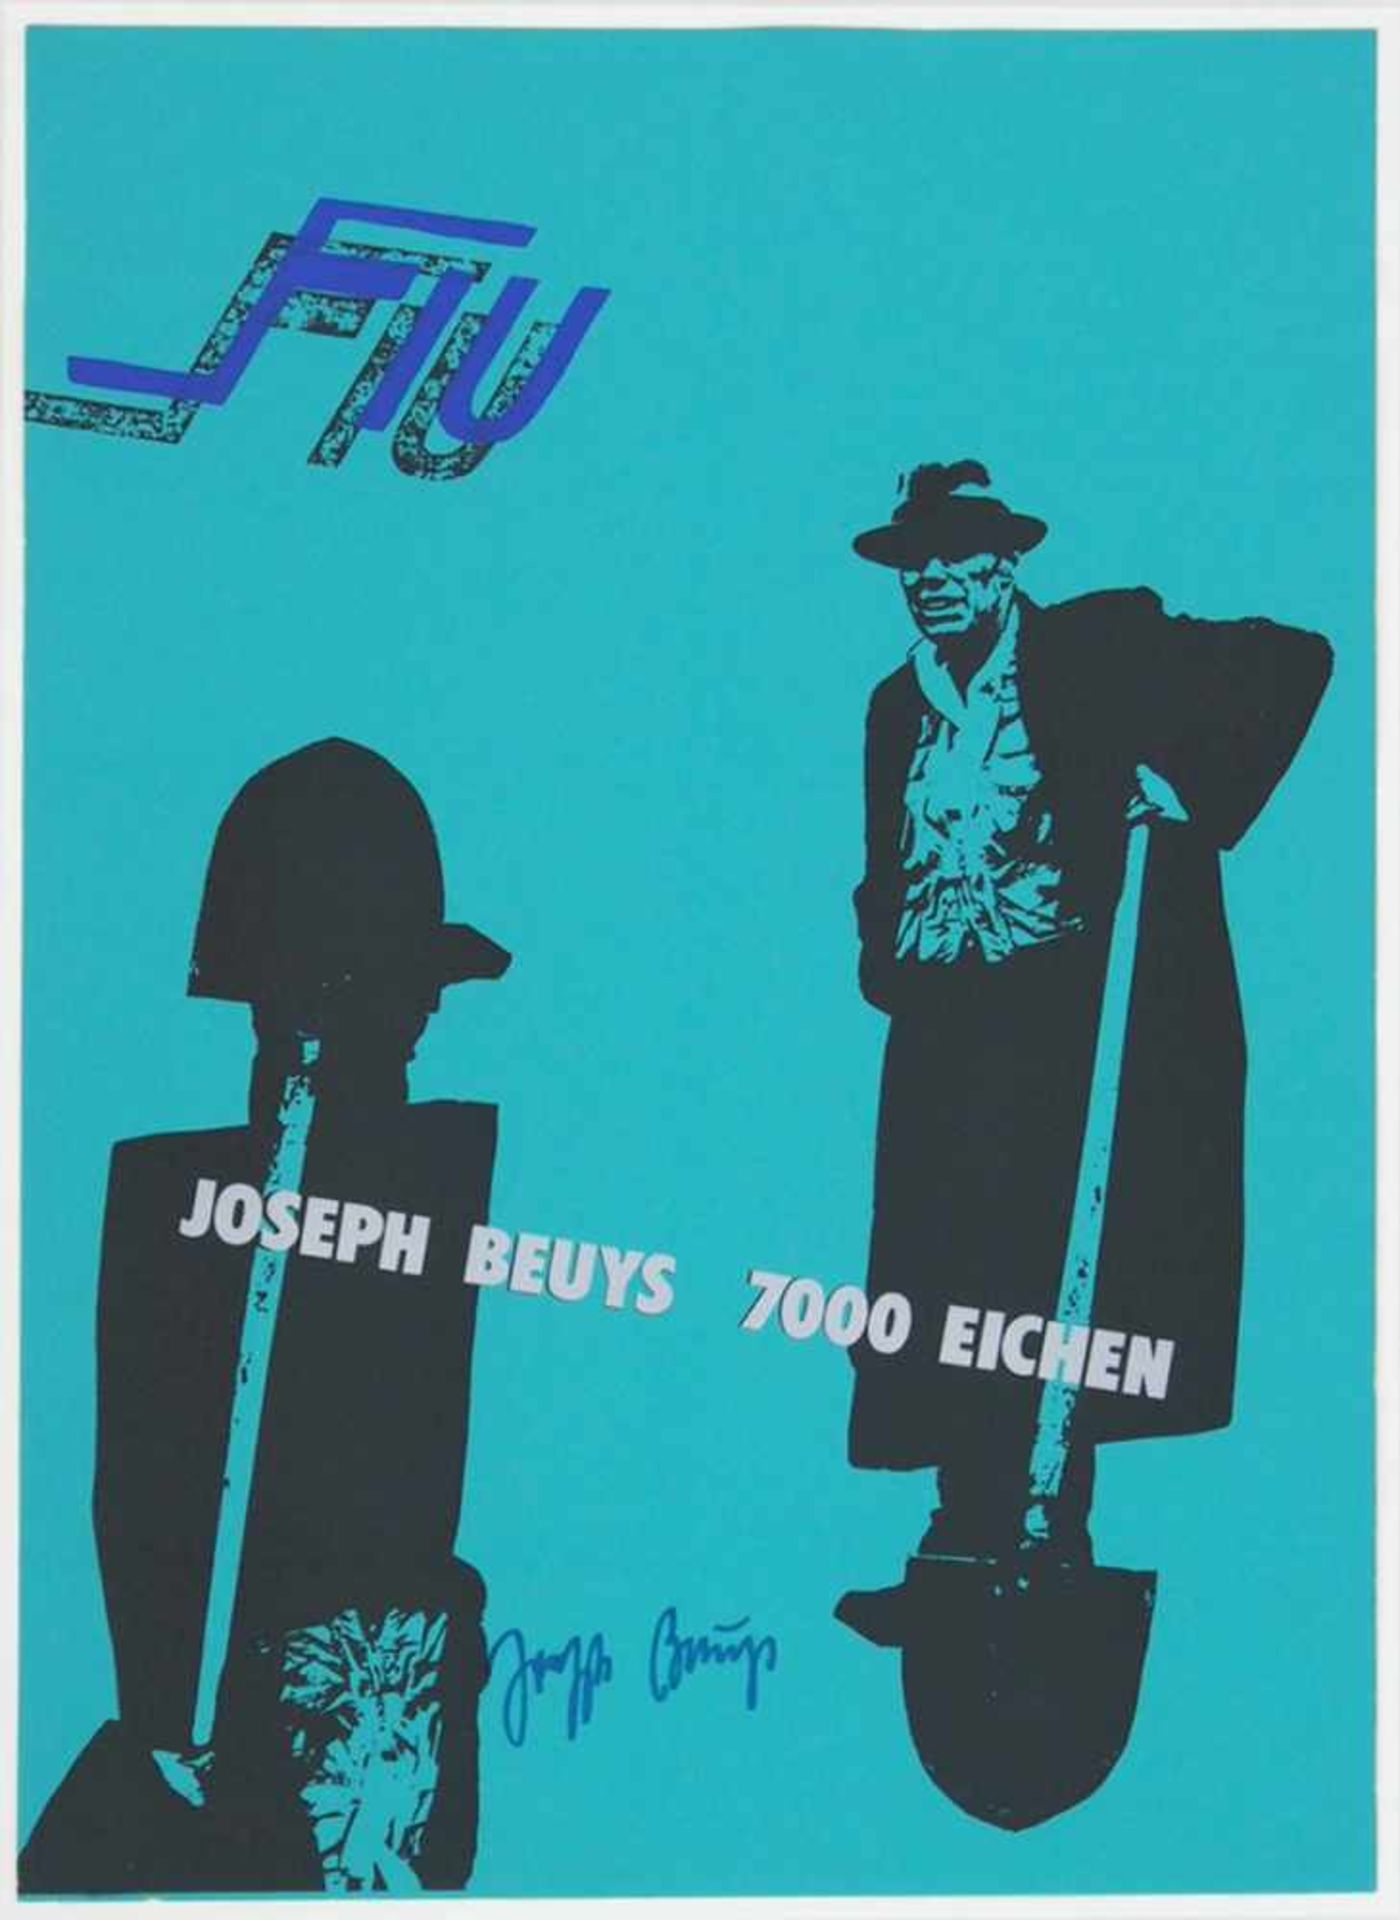 BEUYS, Joseph1921-1986FIU - Joseph Beuys 7000 Eichen1982, Siebdruck, signiert, 61 x 43 cm, gerahmt